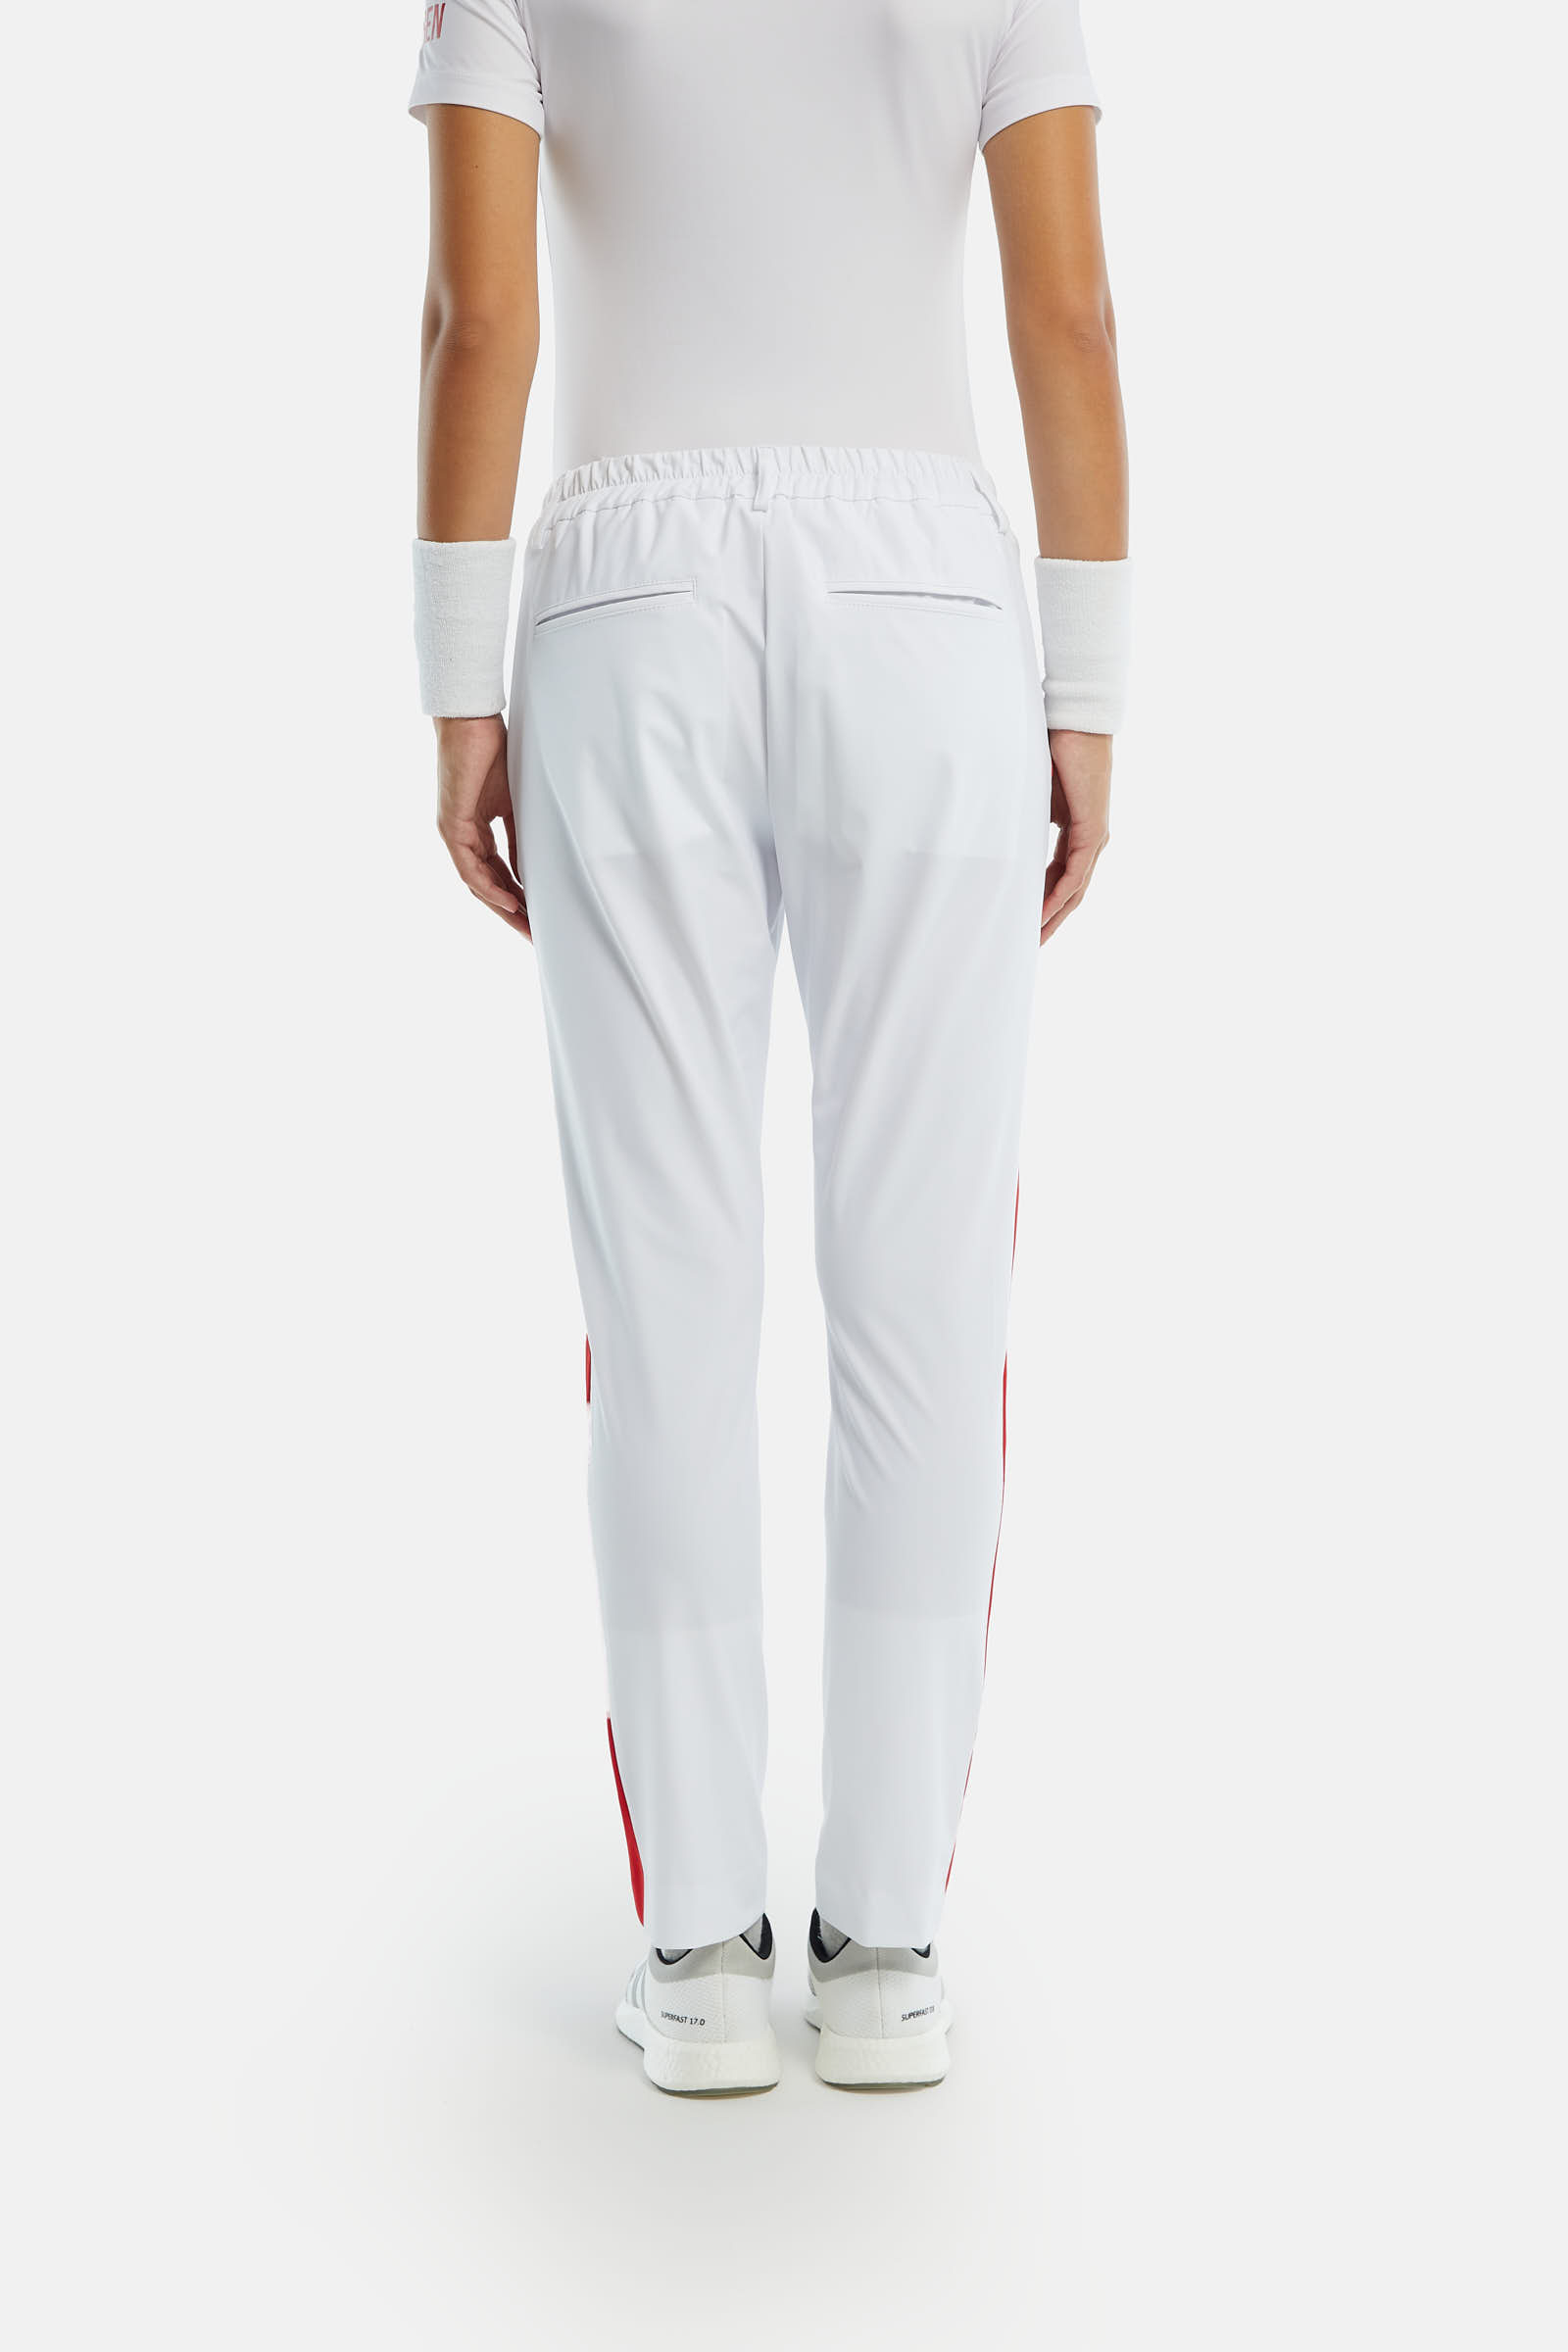 70’S TECH PANTS - WHITE,RED - Hydrogen - Luxury Sportwear